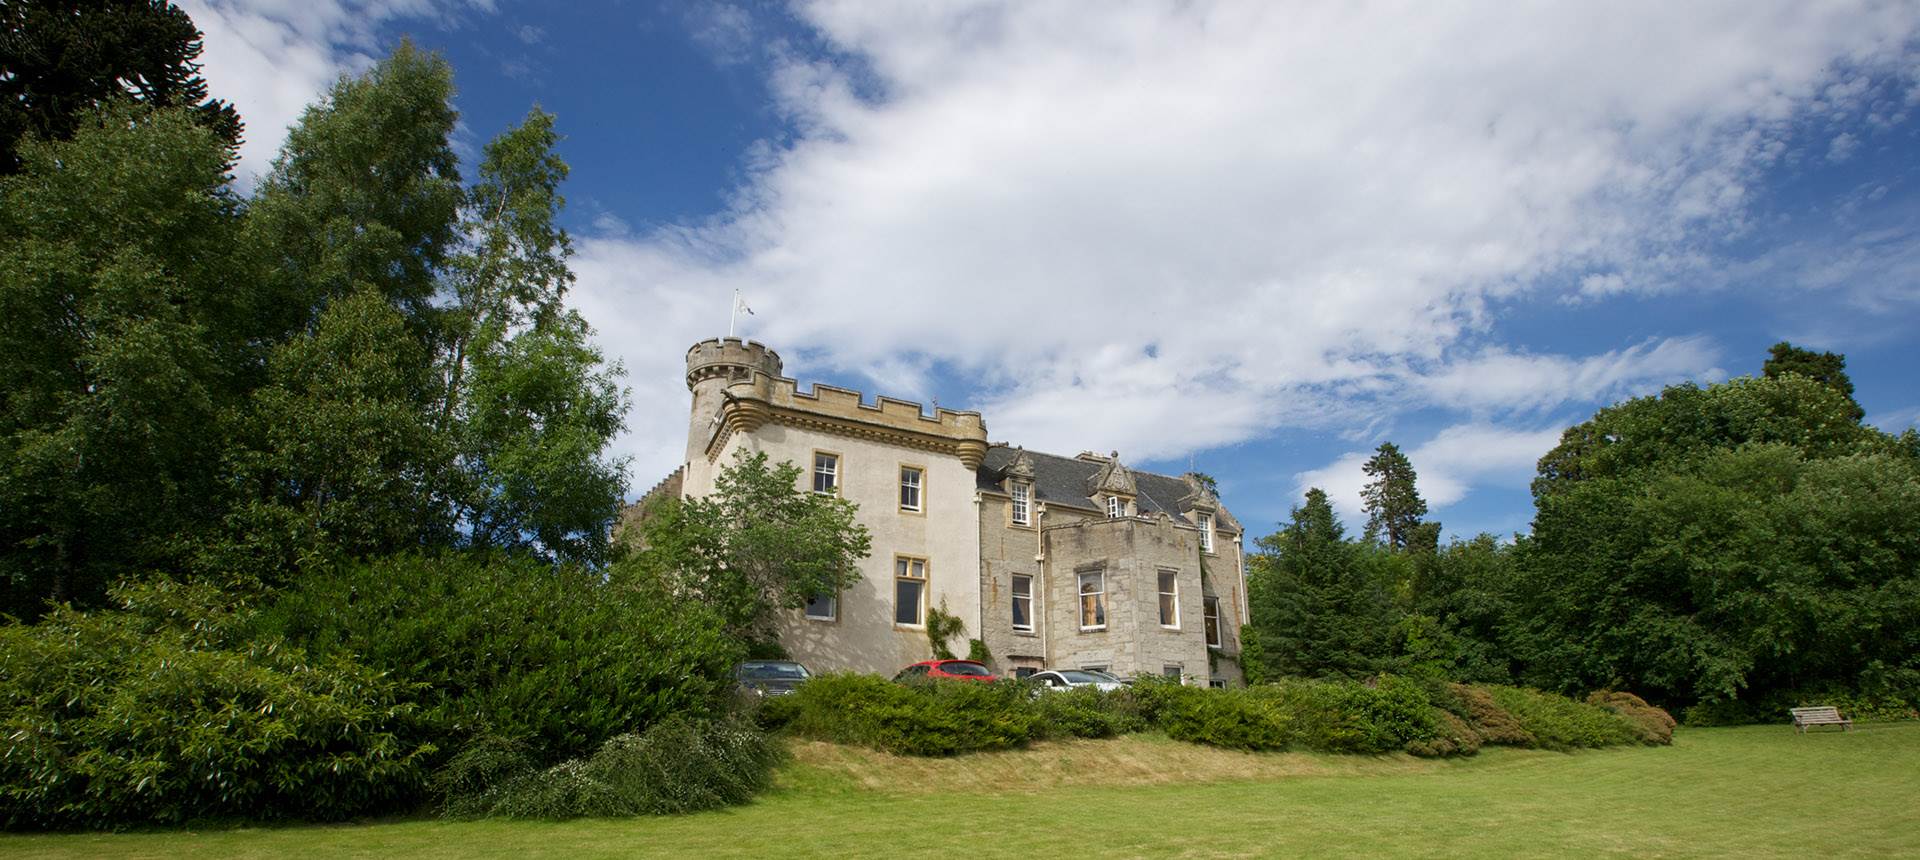 Tulloch Castle in Ross-shire